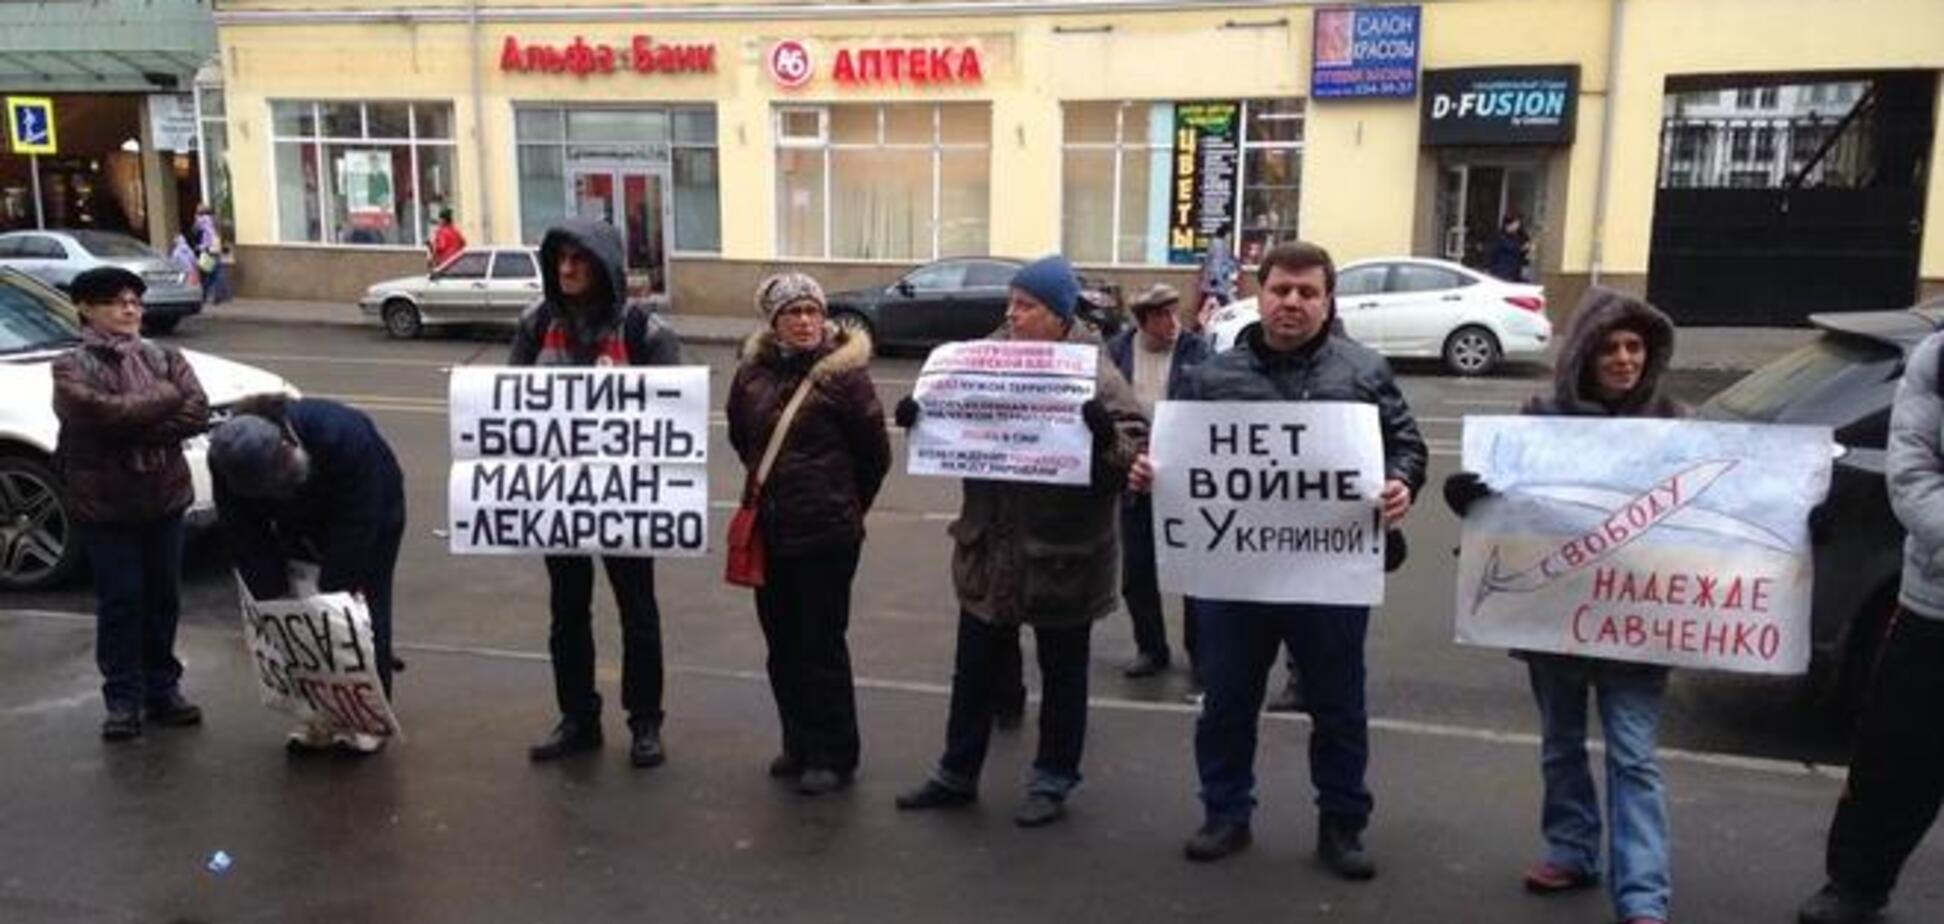 'Путин - болезнь, Майдан - лекарство': в Москве проходит пикет против войны с Украиной